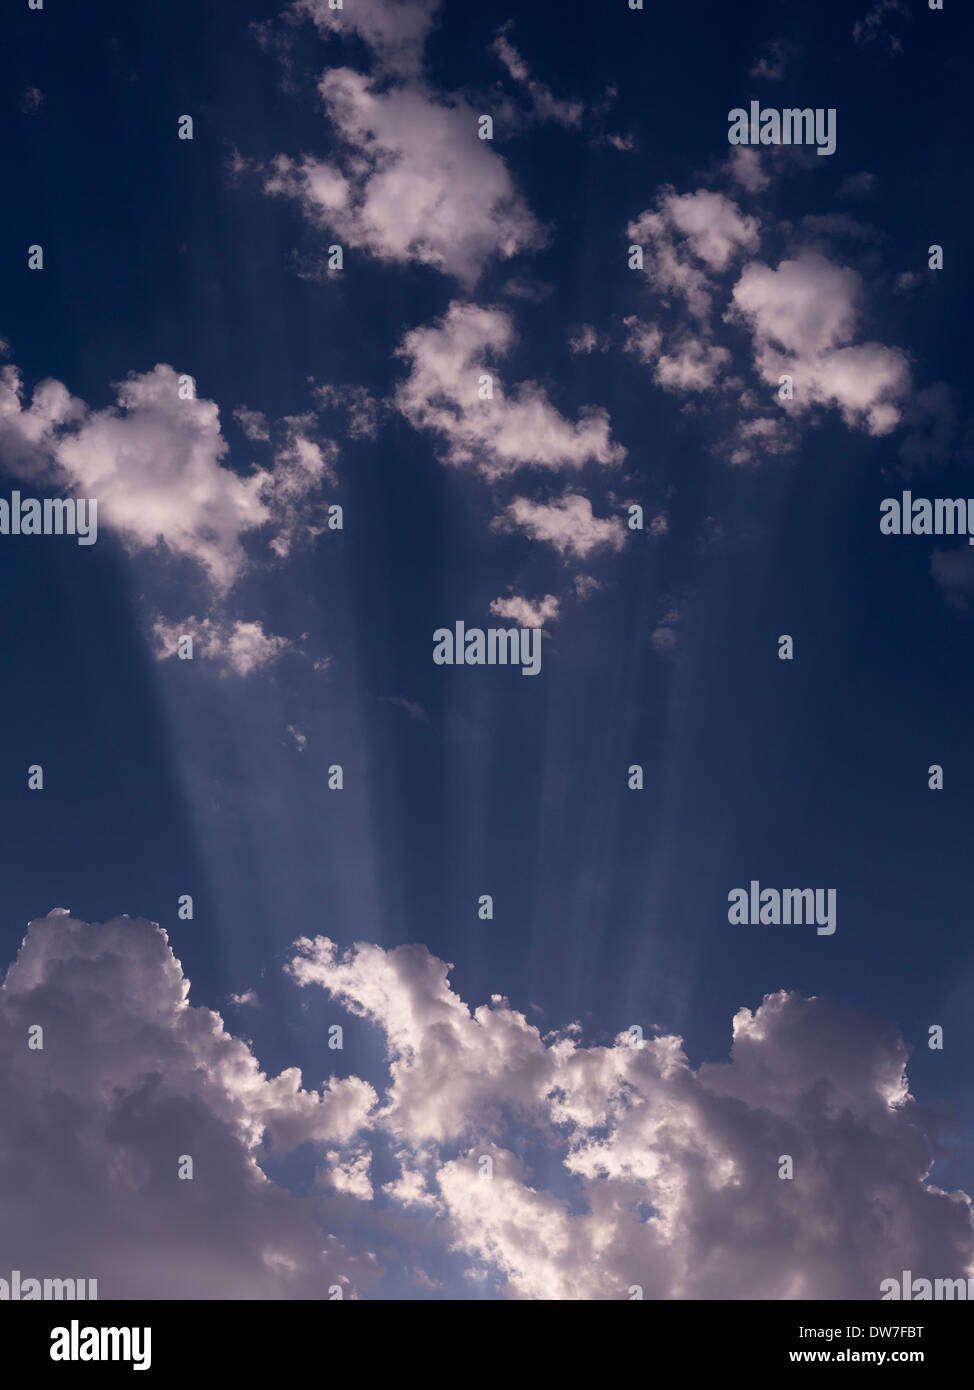 Irradiando rayos de sol y nubes blancas contra el cielo azul Foto de stock